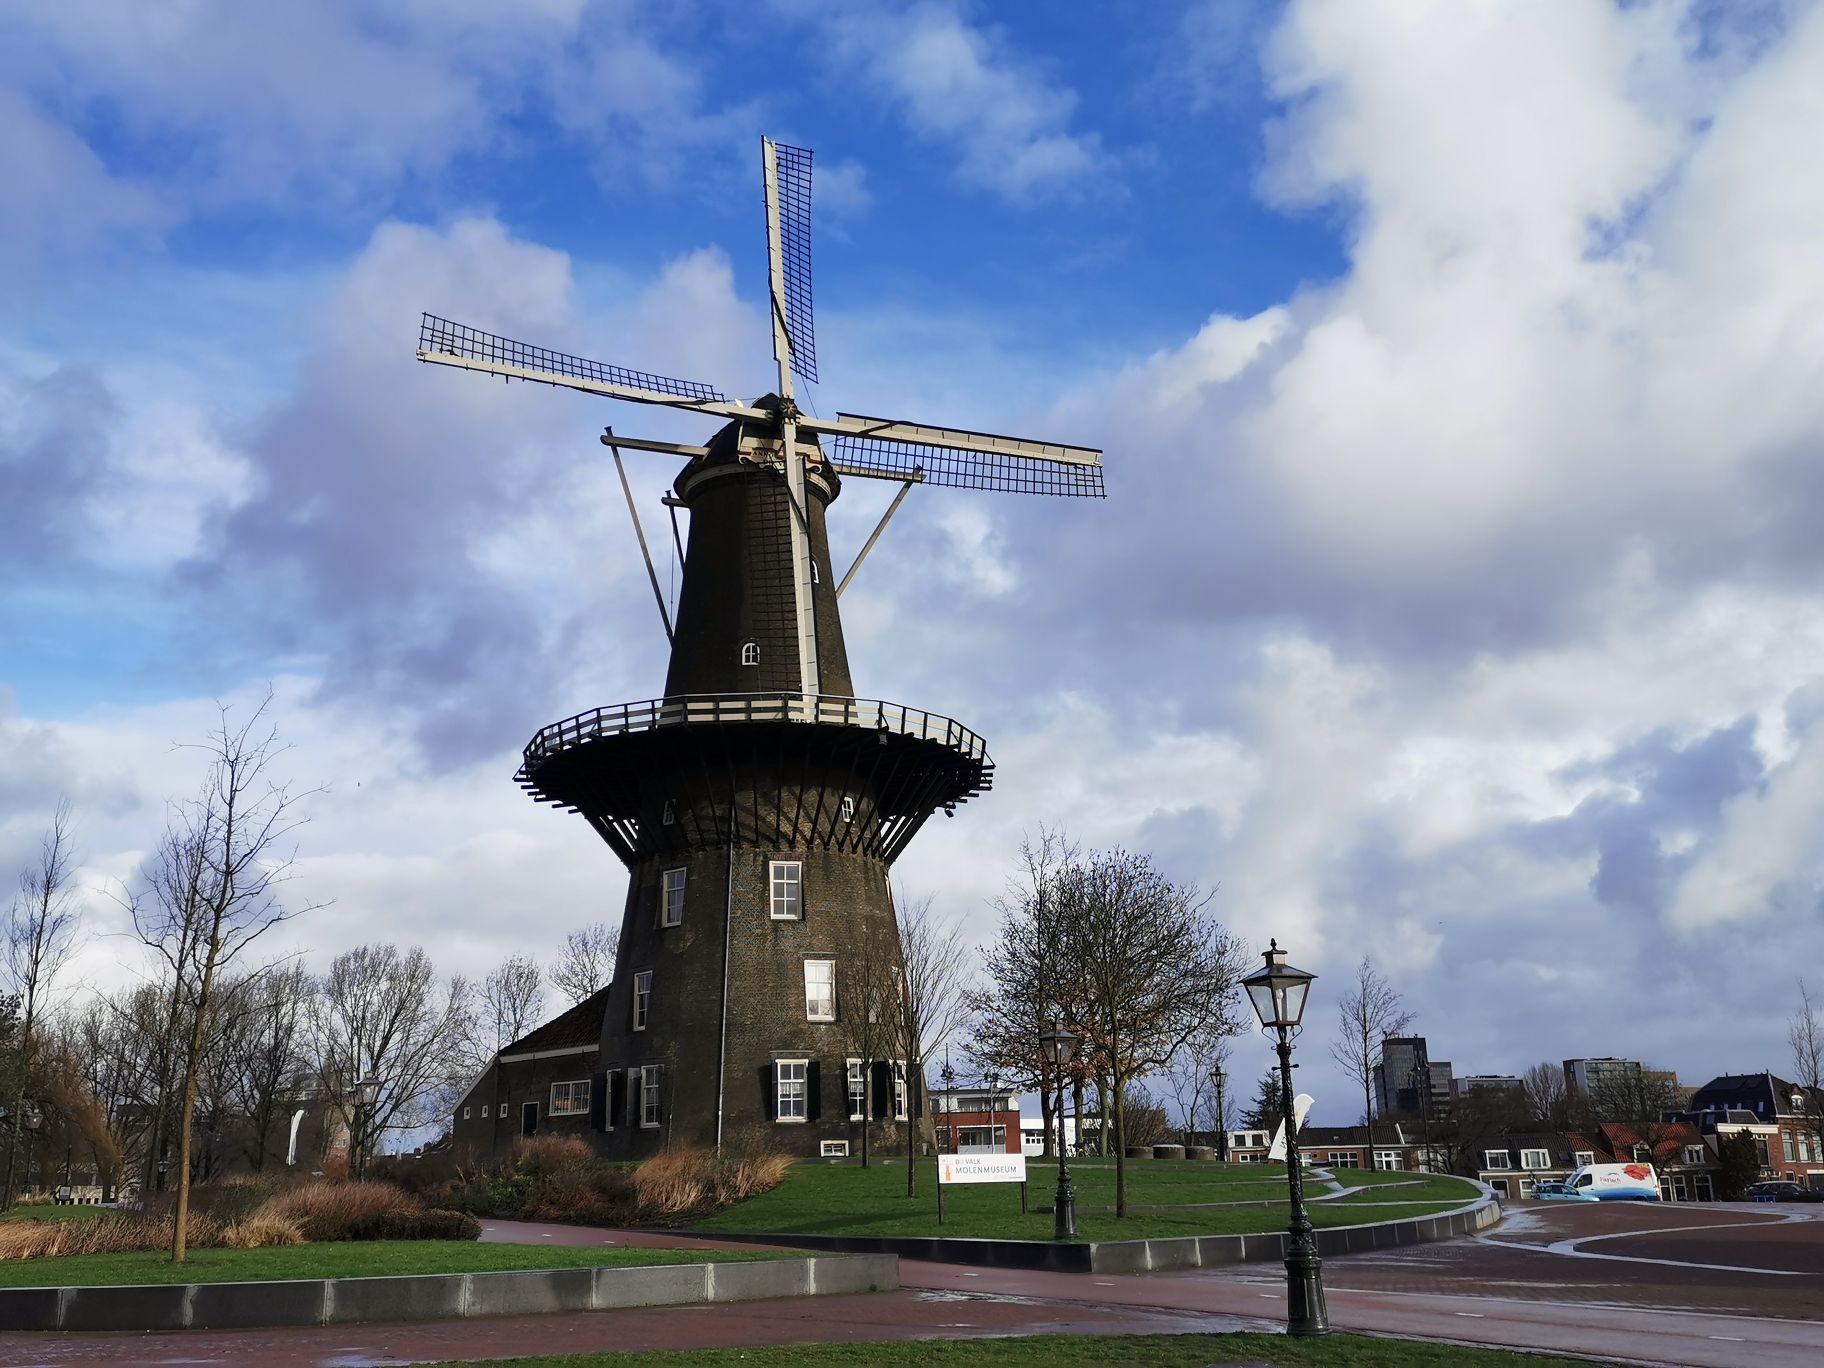 Leiden即是一座城市，也是一所大学，名符其实的大学城。1575年建校，相当于中国的明朝，记得看到